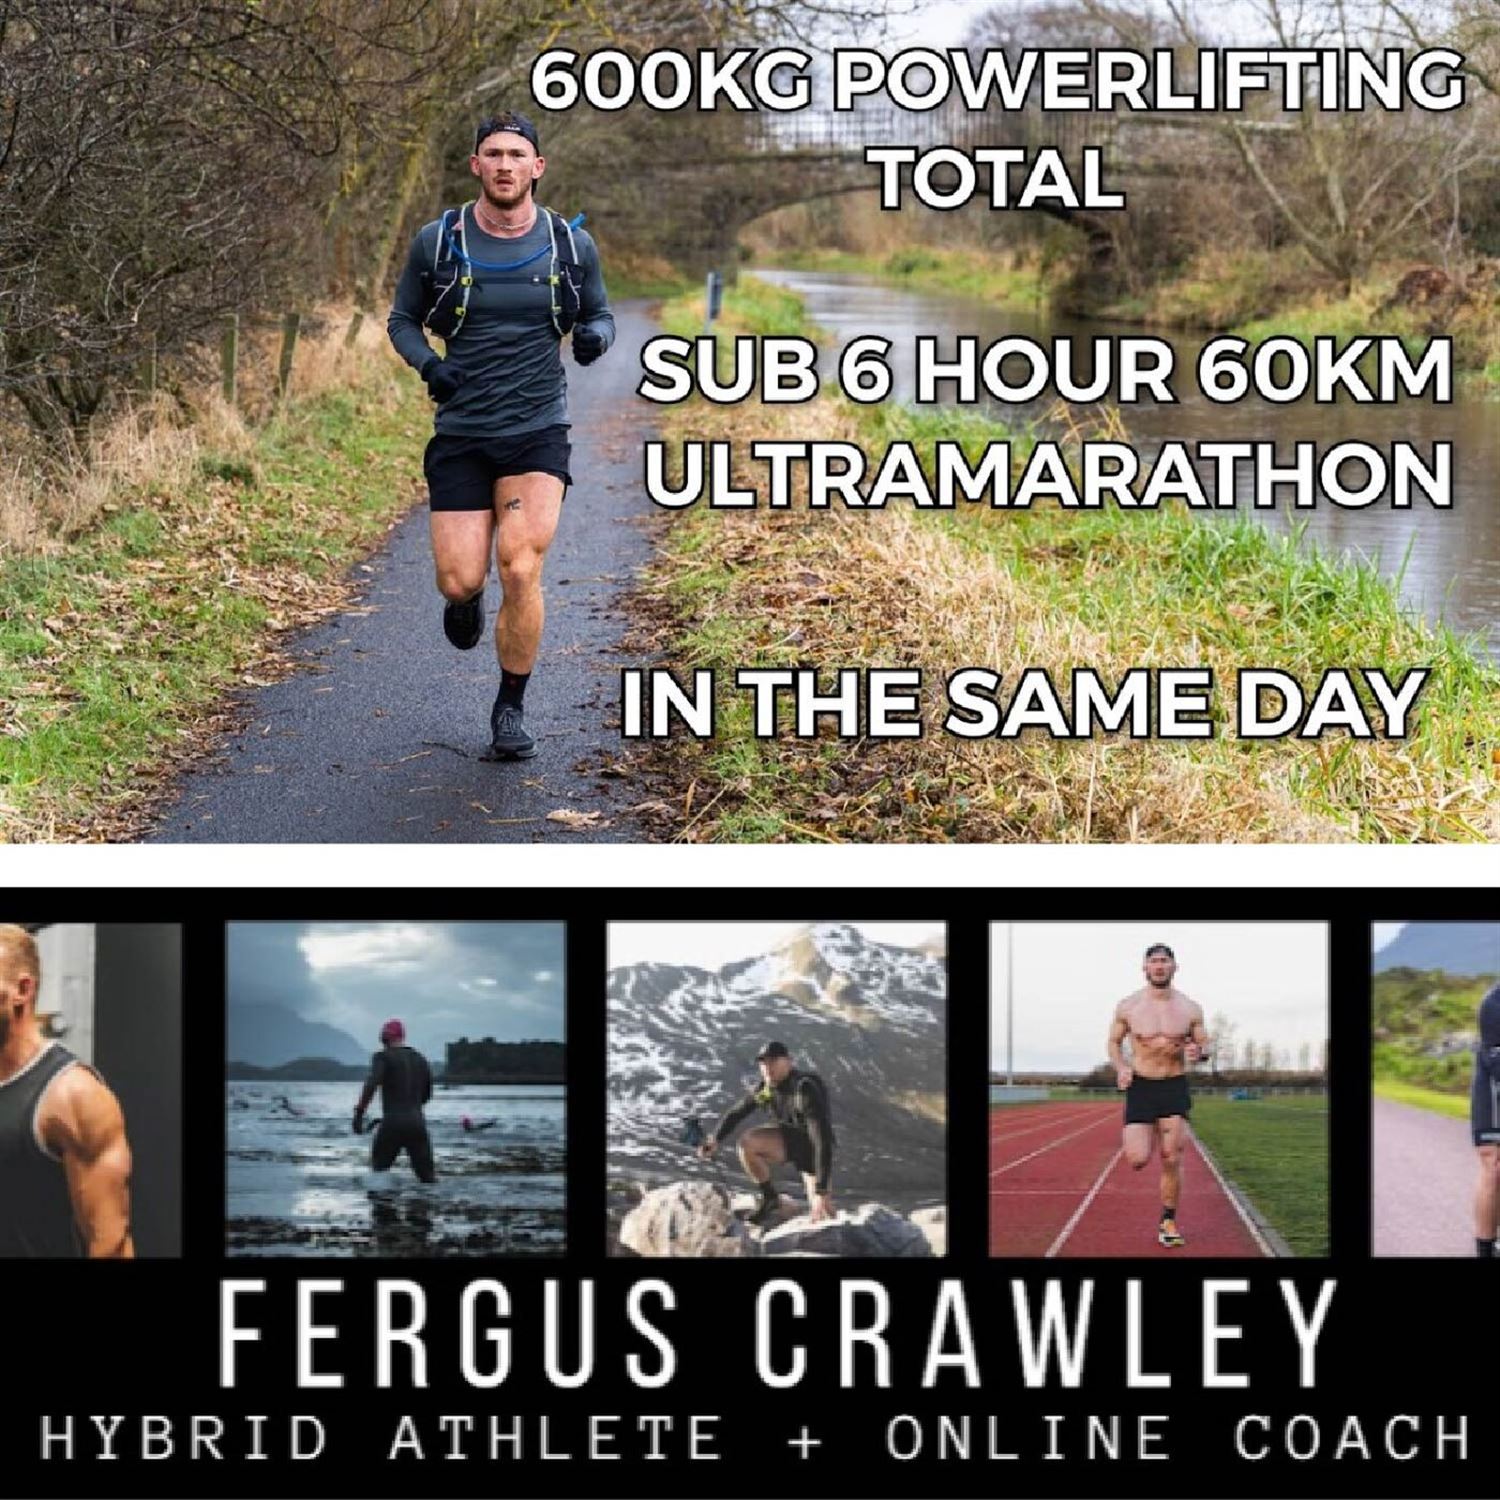 Fergus Crawley & hybrid training